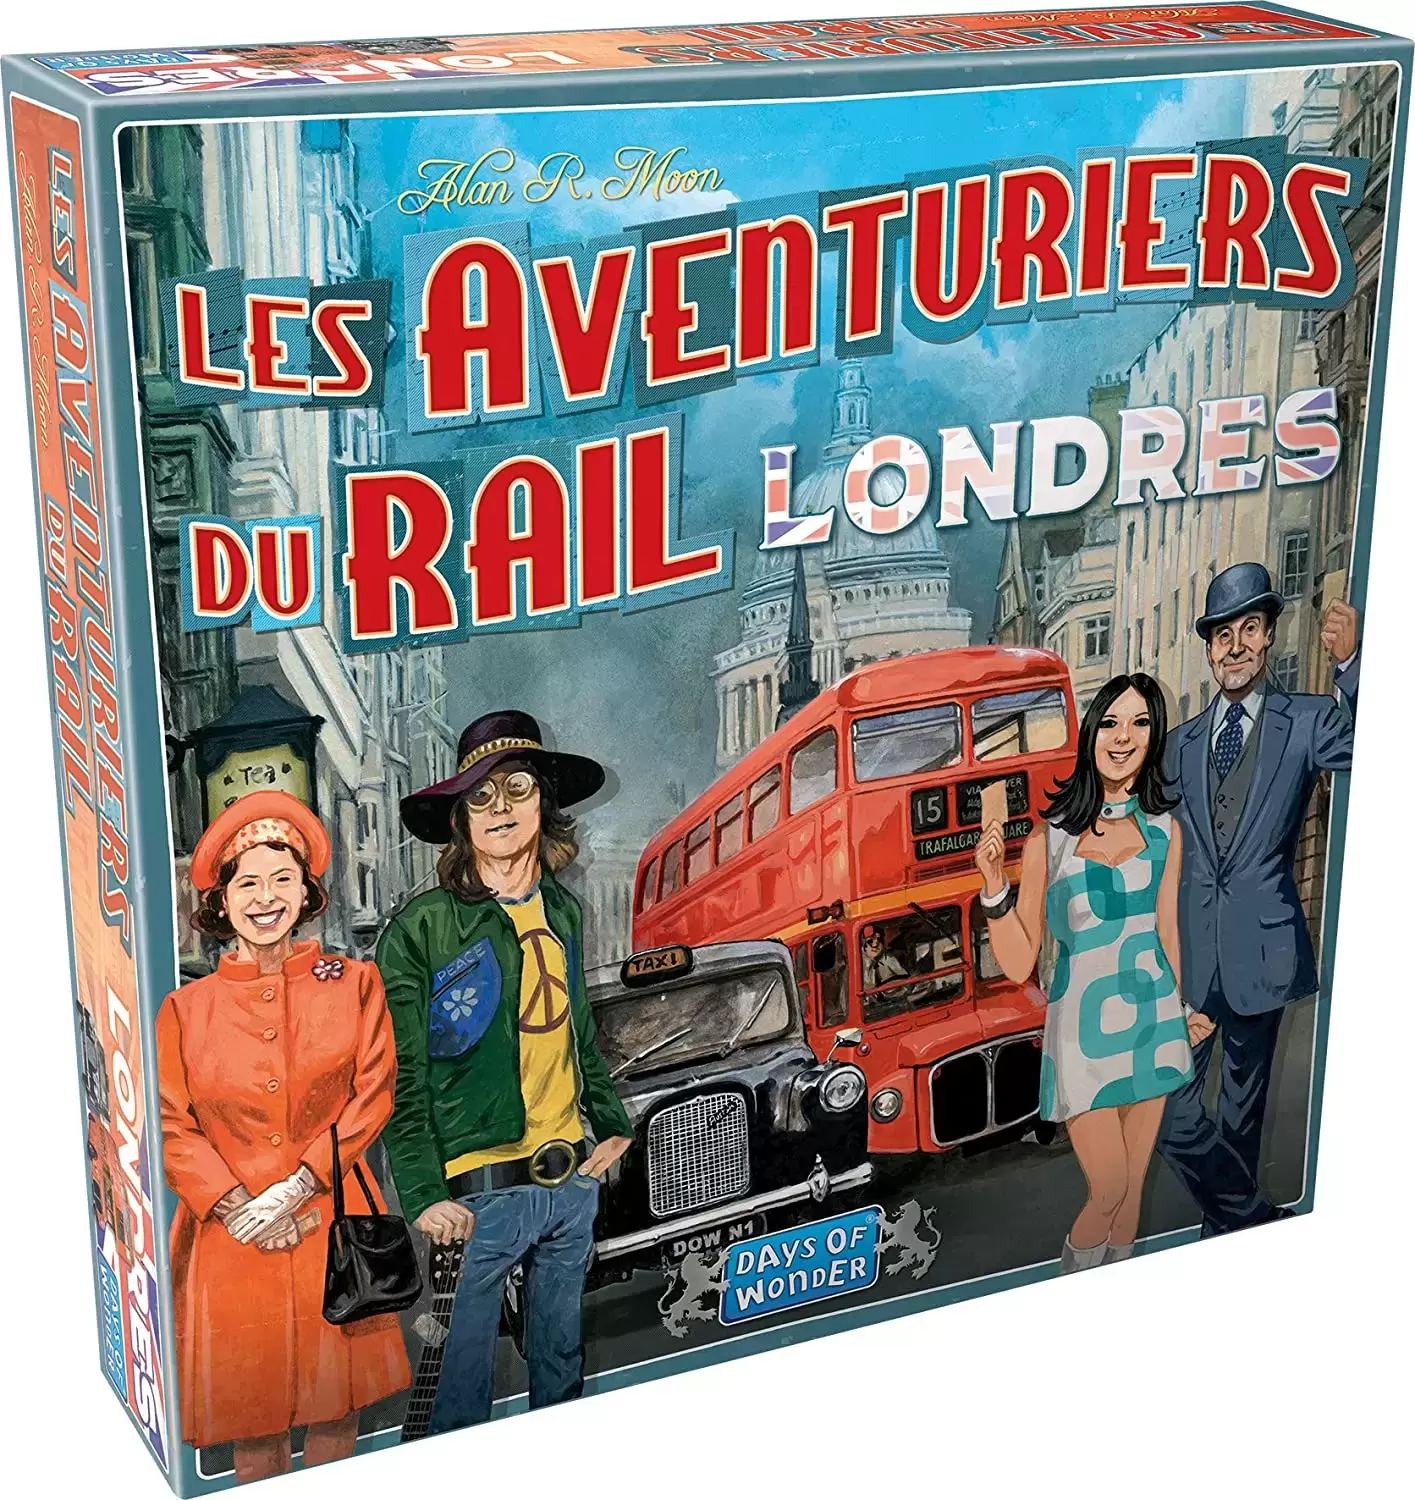 Les Aventuriers du Rail - Les Aventuriers du Rail Londres